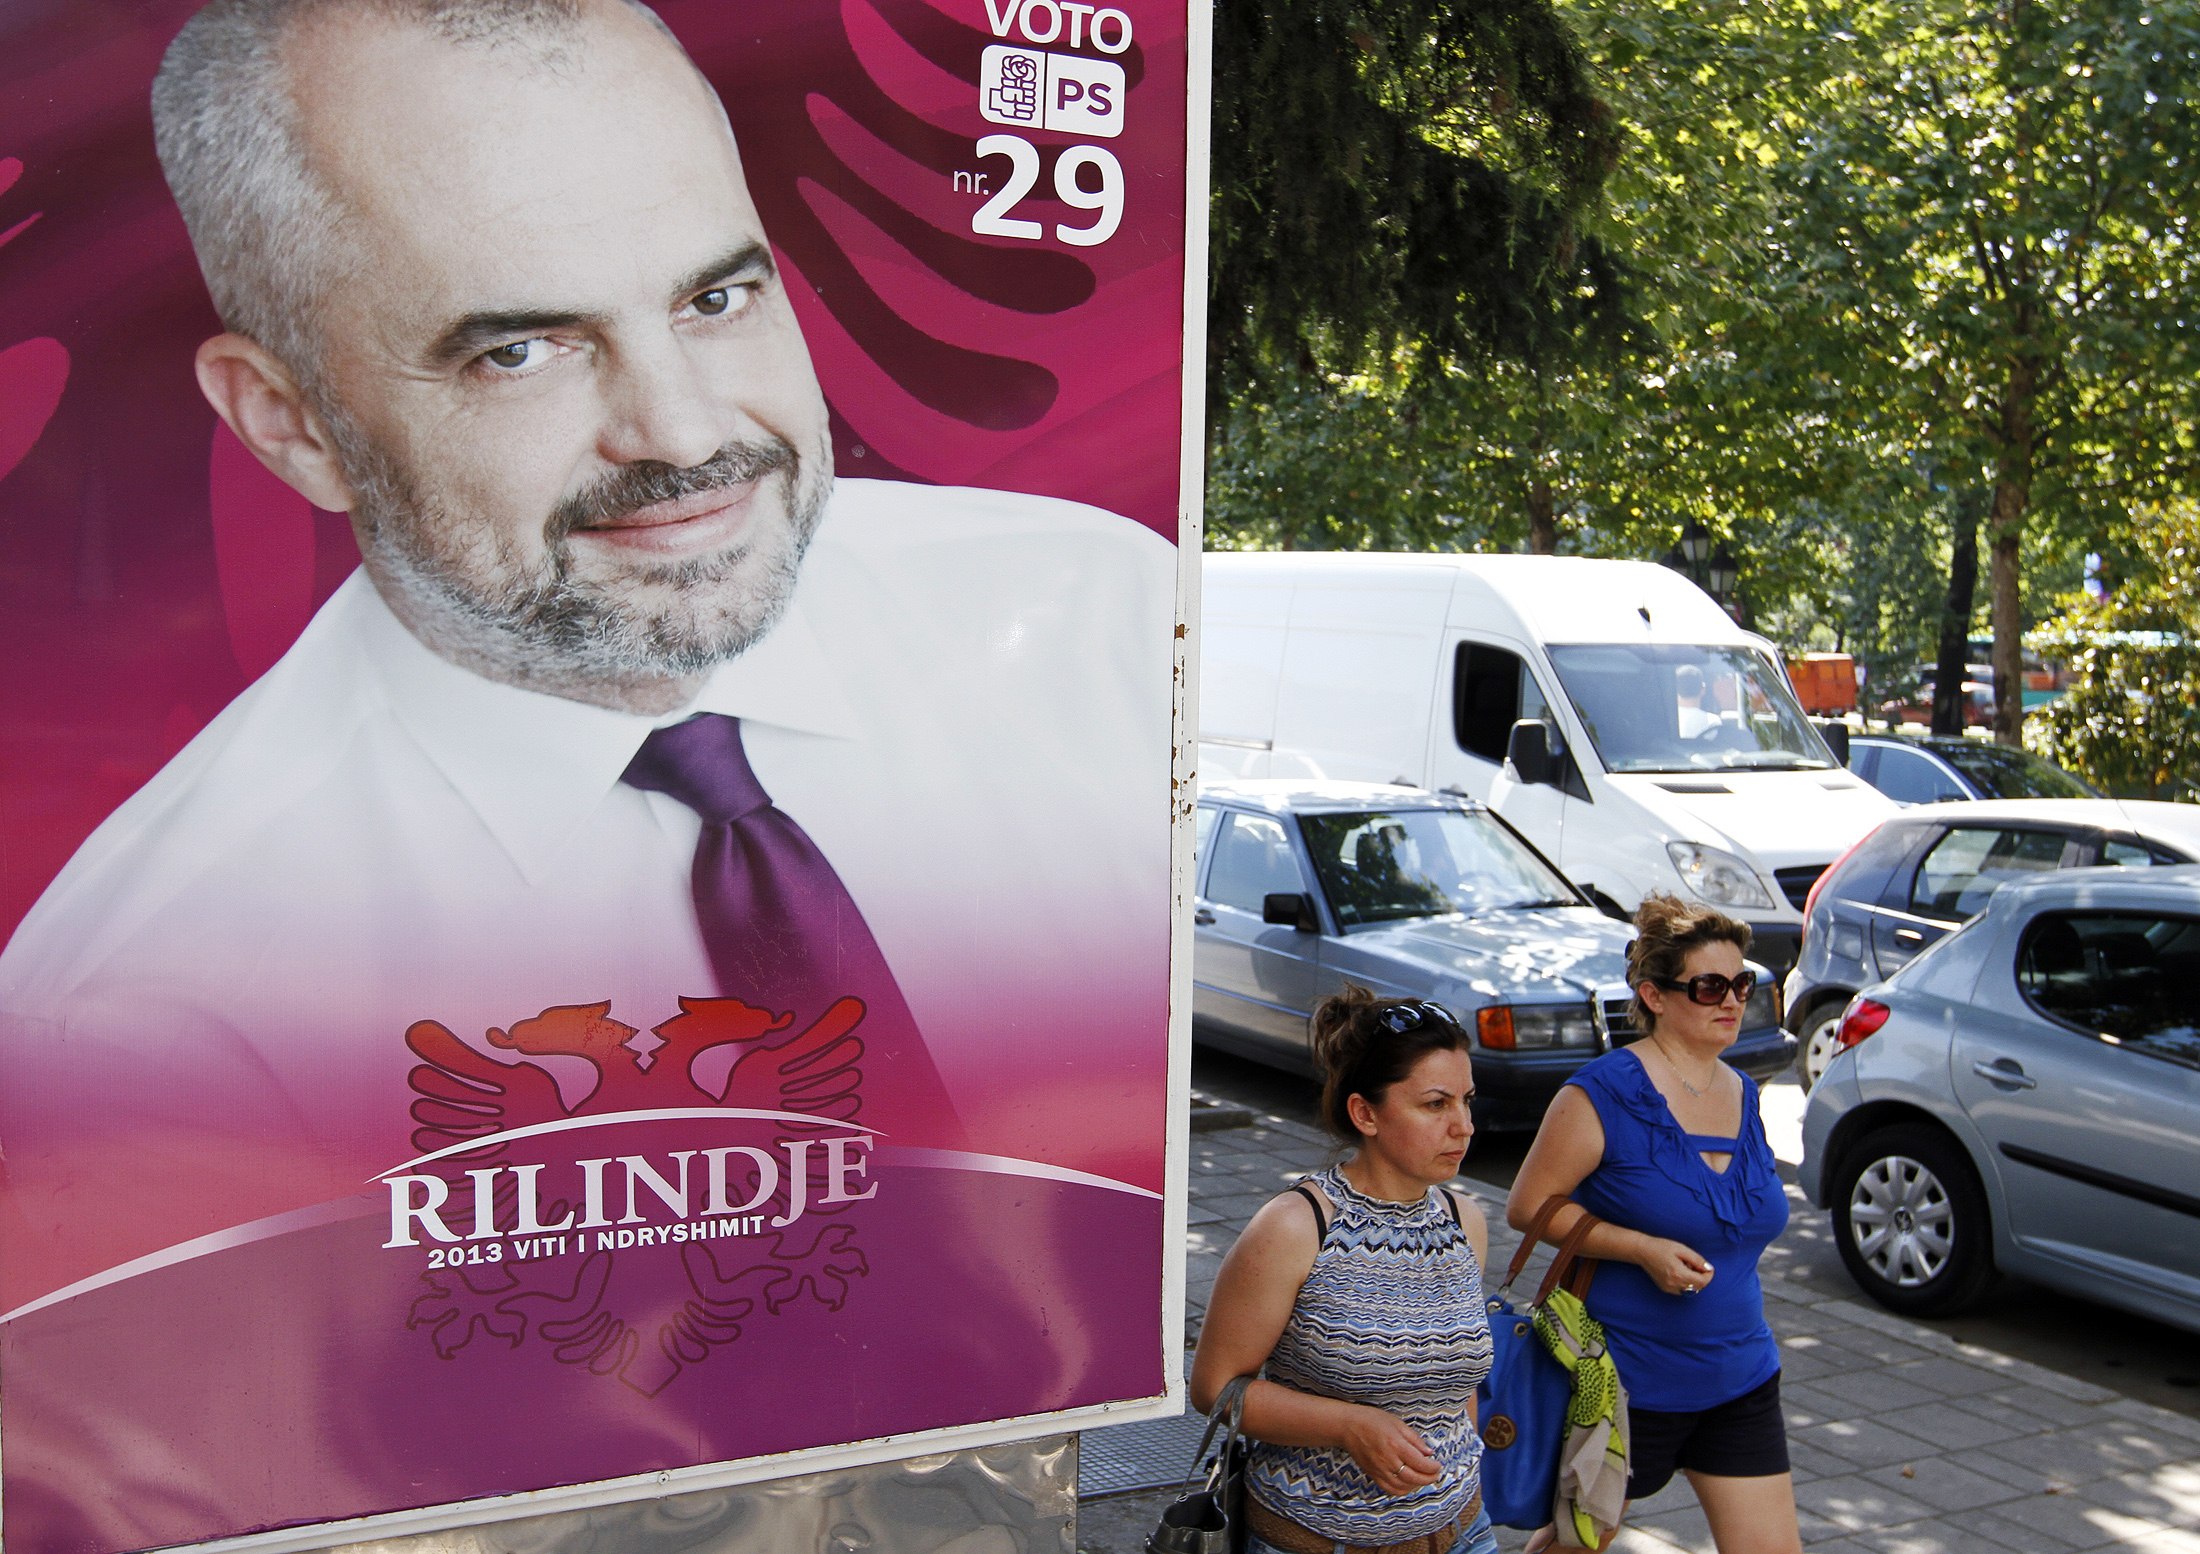 Ένας νεκρός σε εκλογικό κέντρο της Αλβανίας